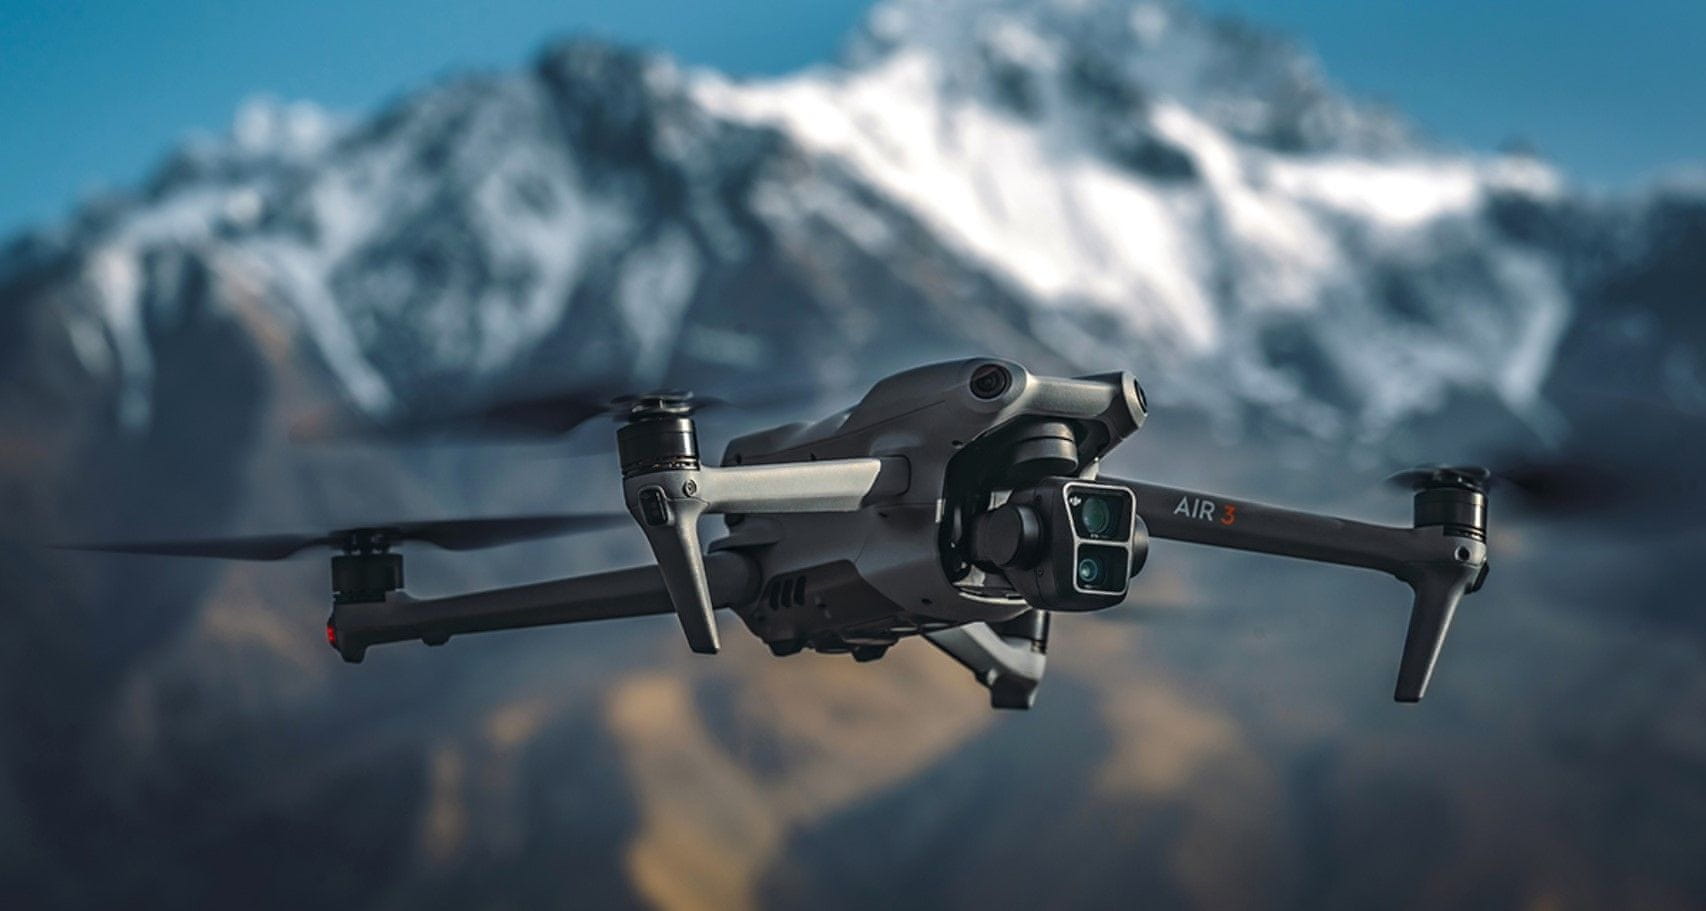  moderní dron dji air 3 skládací microSD malé rozměry 4k hdr videa skvělá kvalita stabilita fotografický režim 